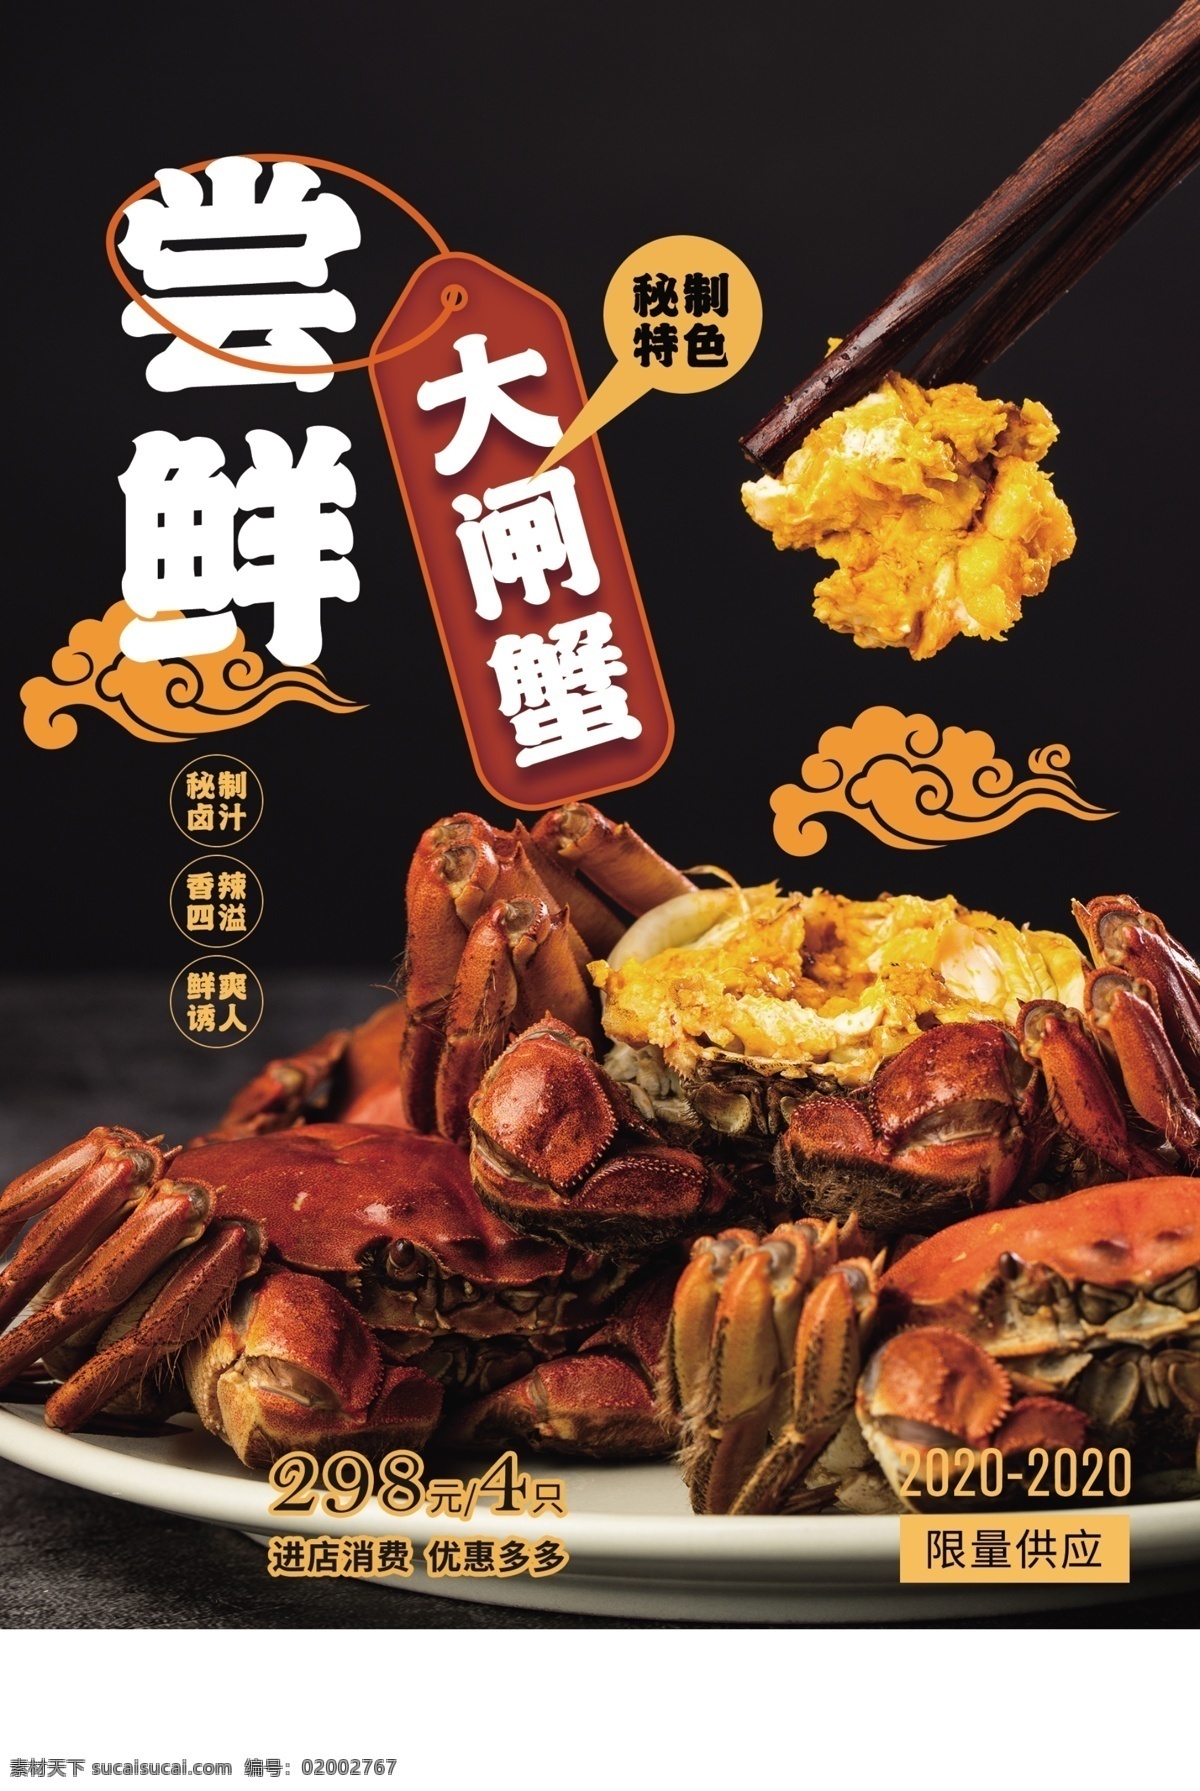 大闸蟹 美食 食 材 海报 素材图片 食材 餐饮美食 类